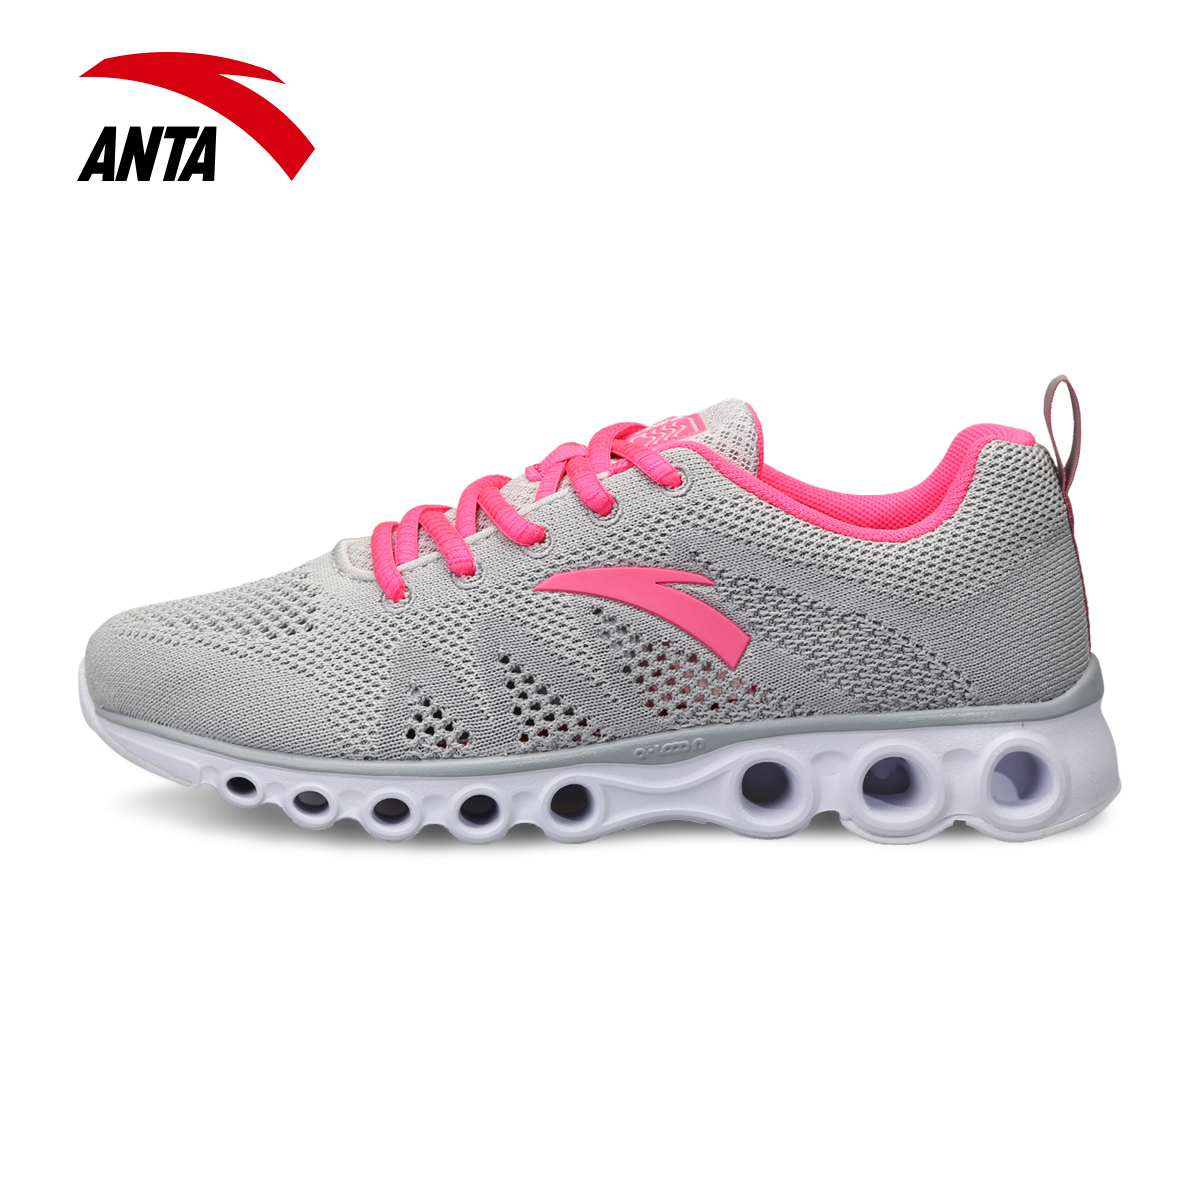 安踏女鞋 跑鞋2015夏新款ANTA透气能量环跑步鞋女运动鞋12525588